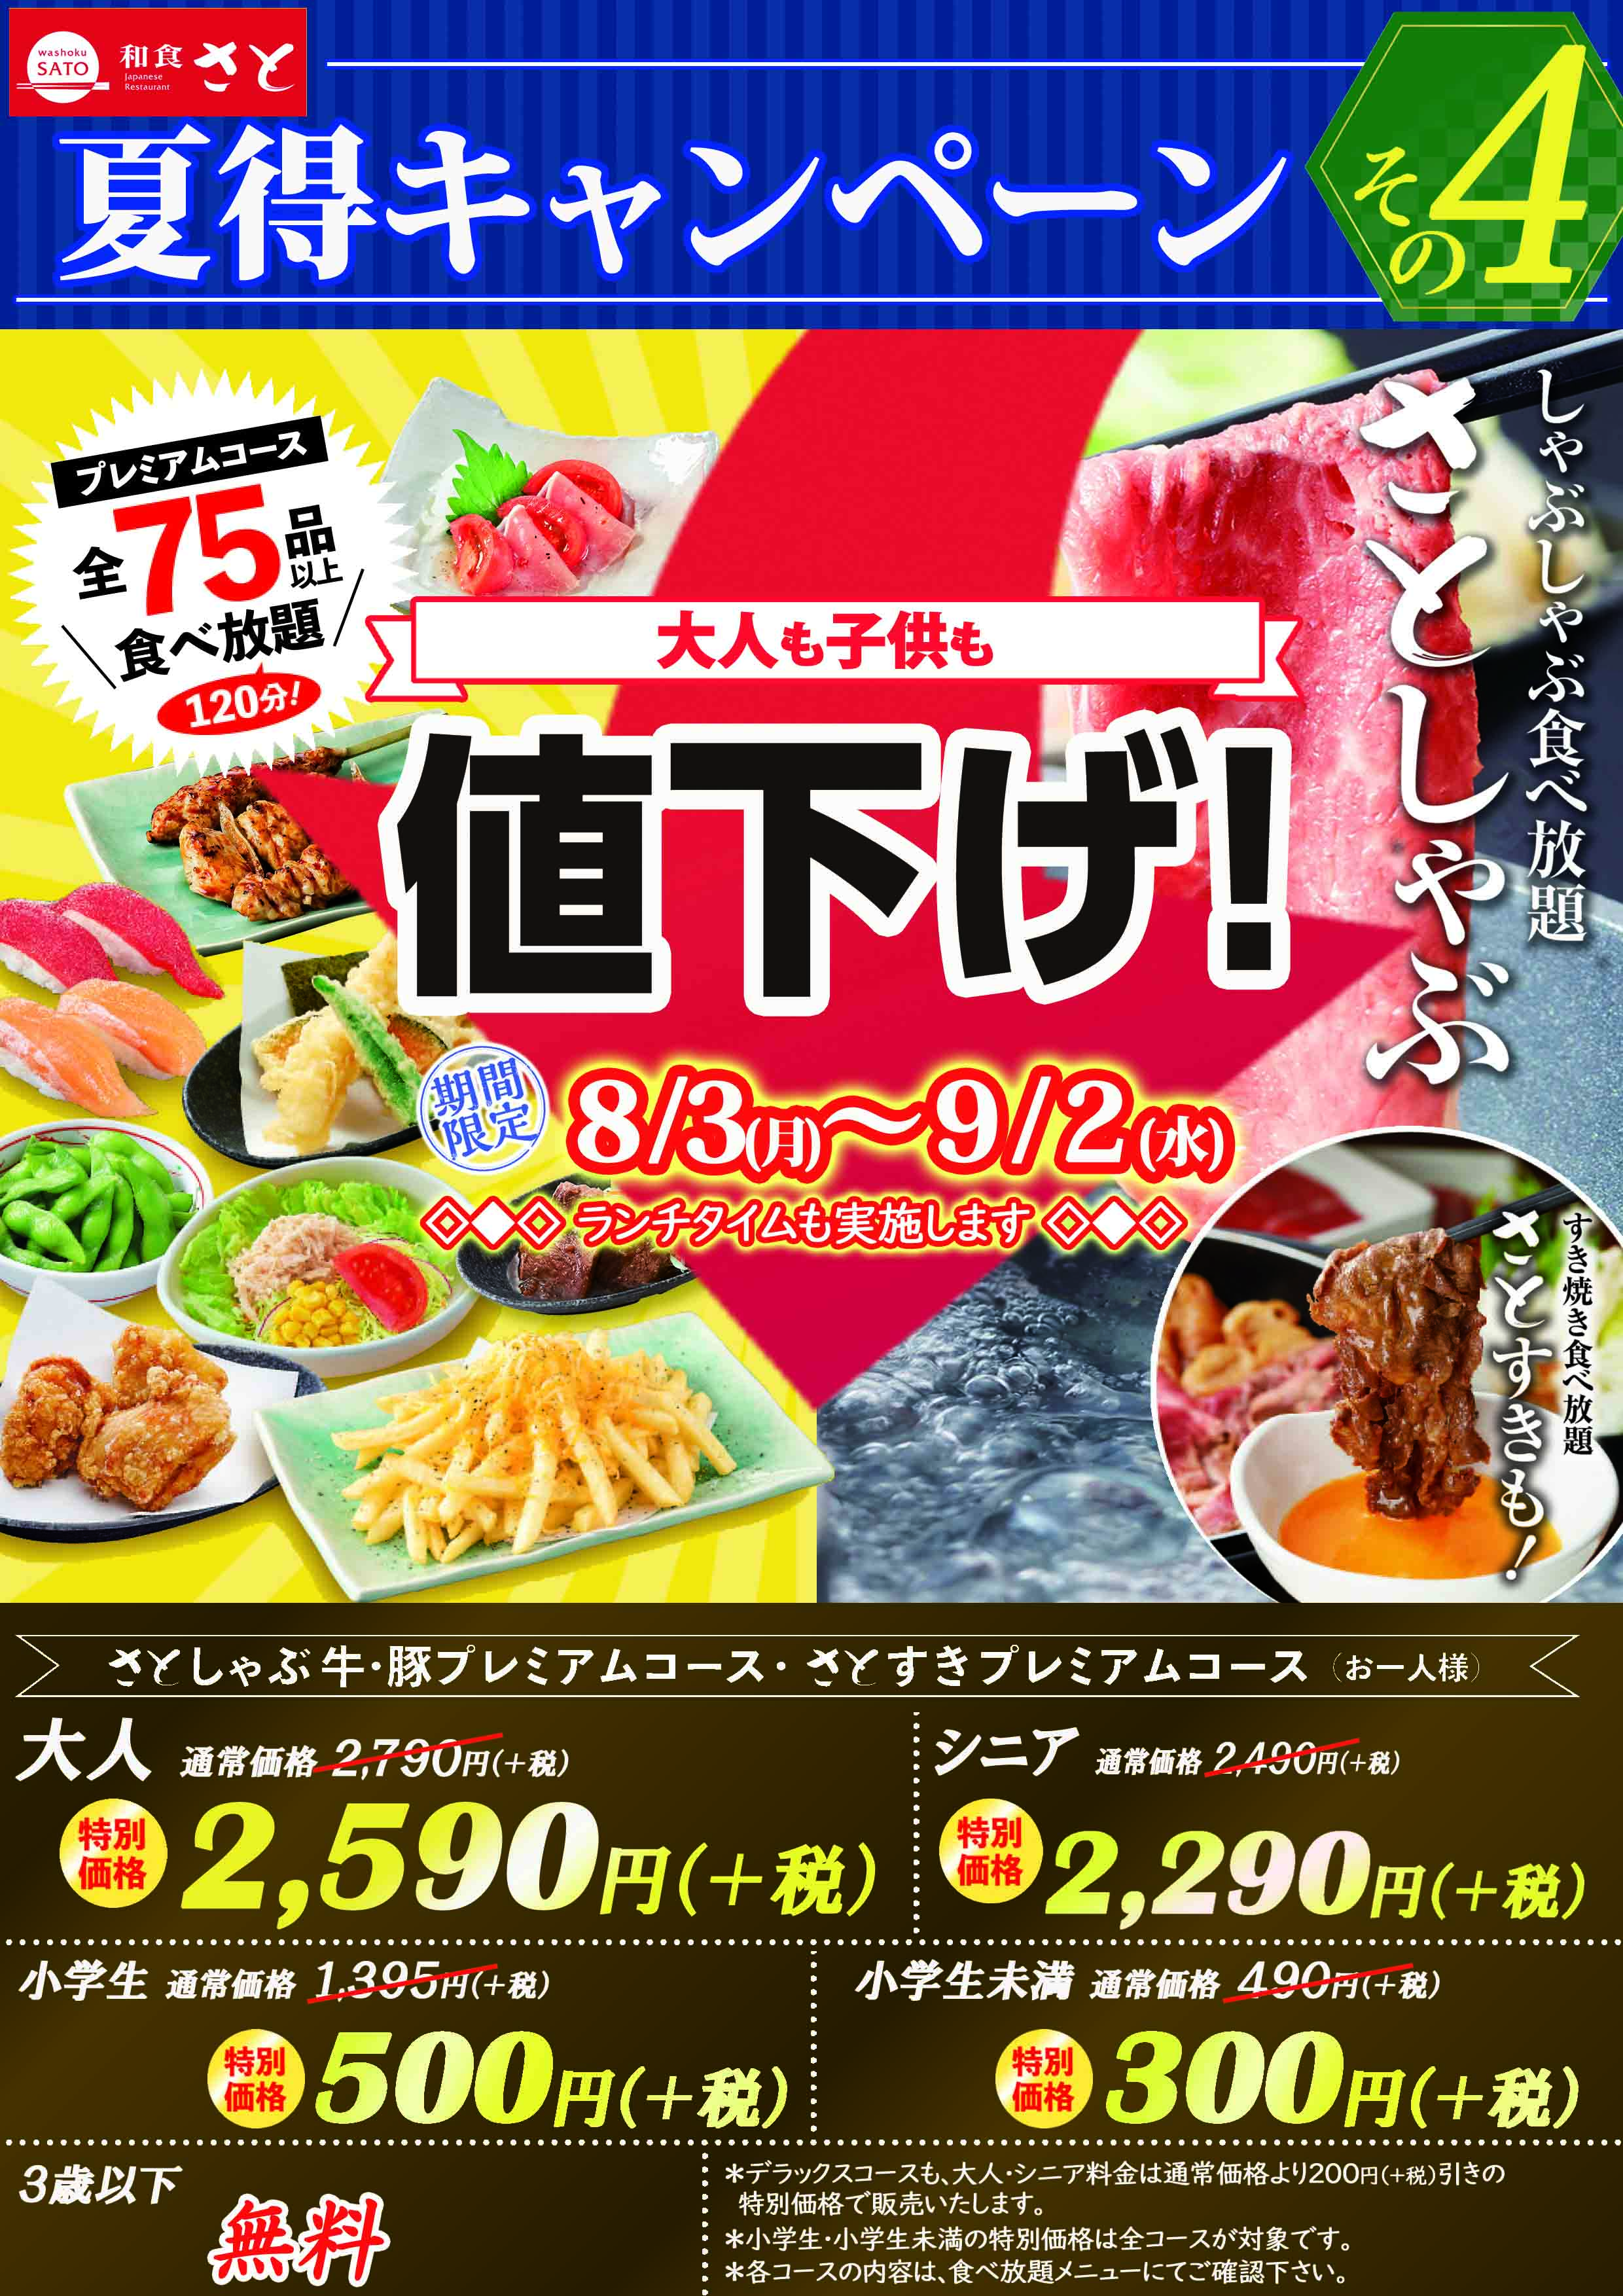 和食さと 緊急追加企画 小学生は５００円でしゃぶしゃぶ食べ放題 サトフードサービス株式会社のプレスリリース